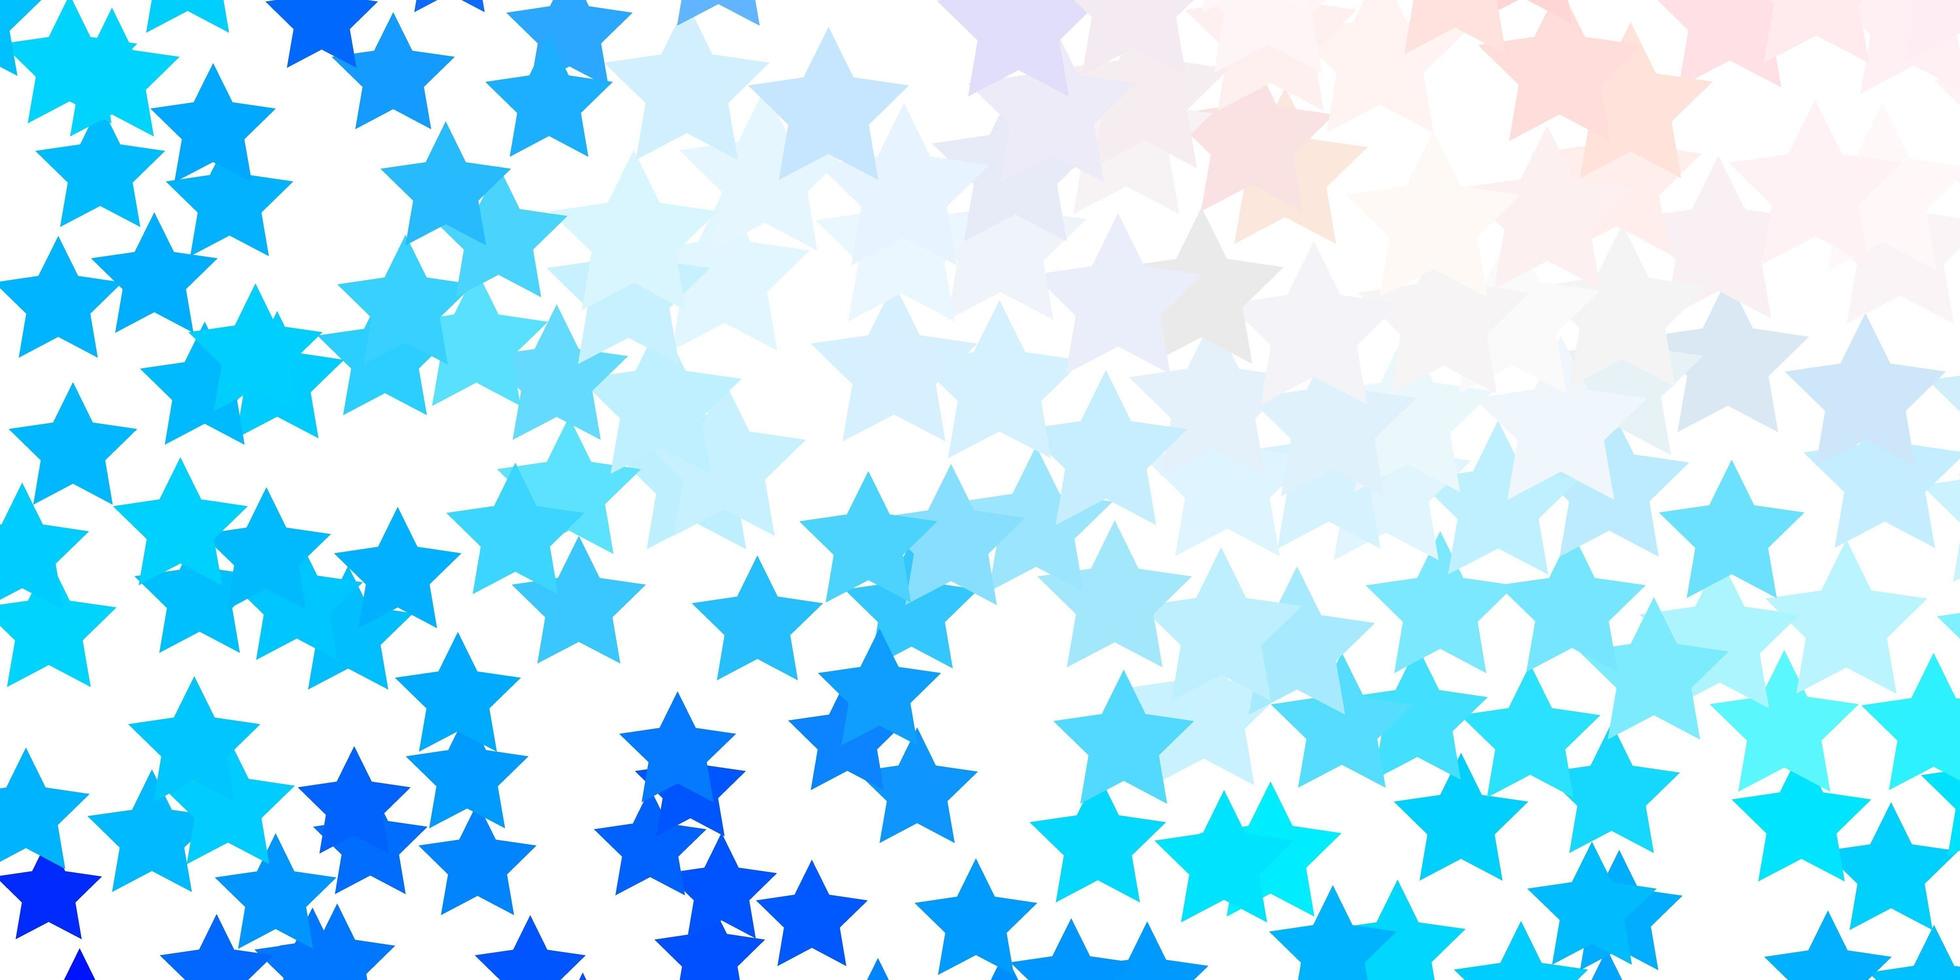 rosa claro, padrão de vetor azul com estrelas abstratas. ilustração decorativa com estrelas no modelo abstrato. padrão para anúncio de ano novo, livretos.